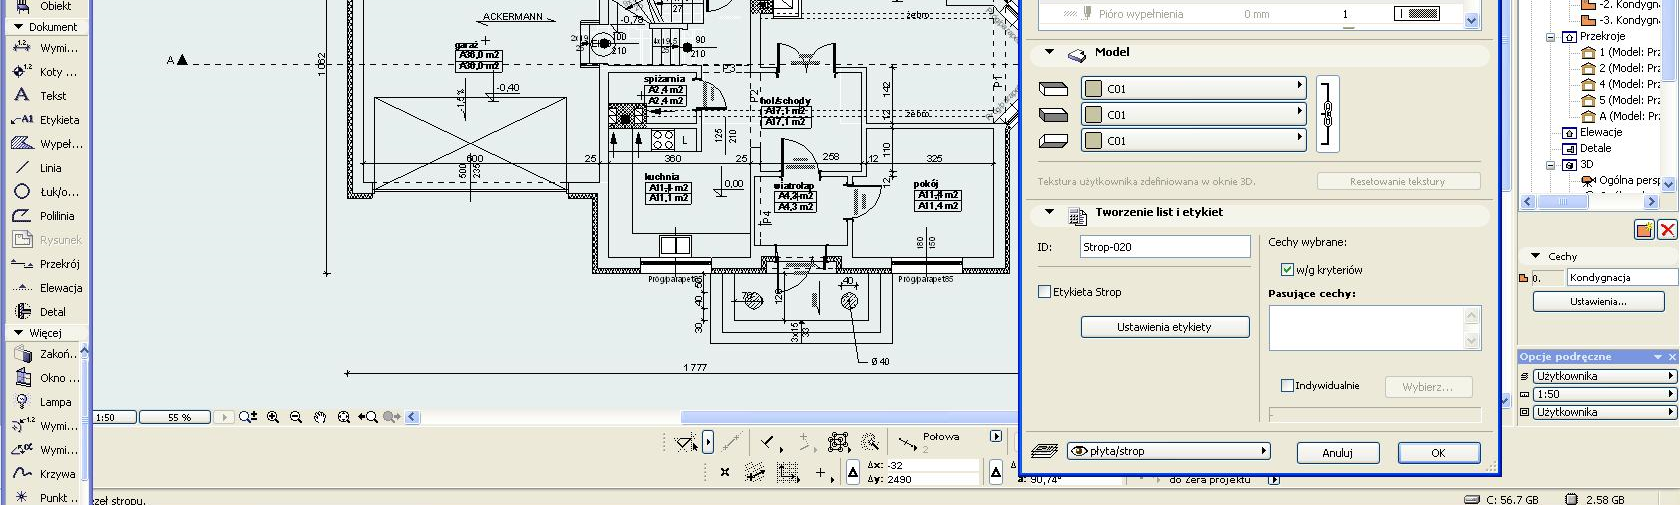 Strop w programie komputerowym ArchiCAD można ustawić na Rzucie oraz w układzie 3D. Używany jest głównie do tworzenia płaszczyzny podłogowej oraz półpięter.